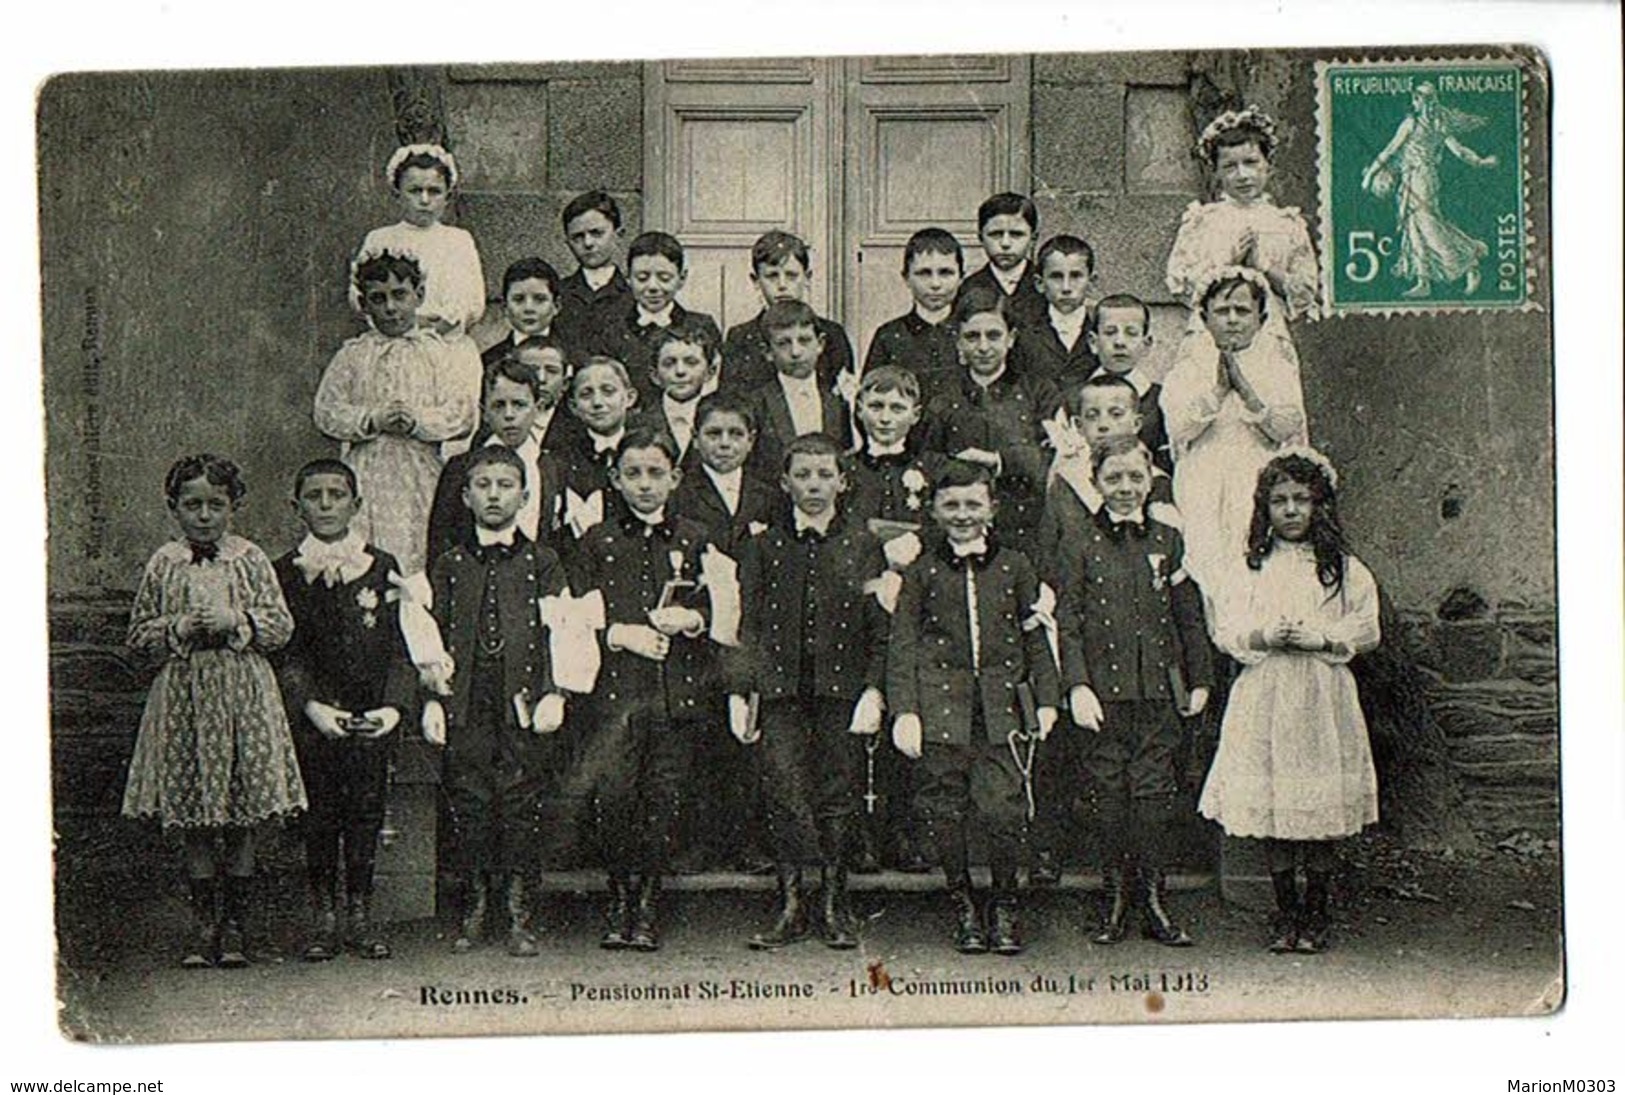 35 - RENNES - Pensionnat Saint Etienne, 1er Communion Du 1er Mai 1913  - 2514 - Rennes